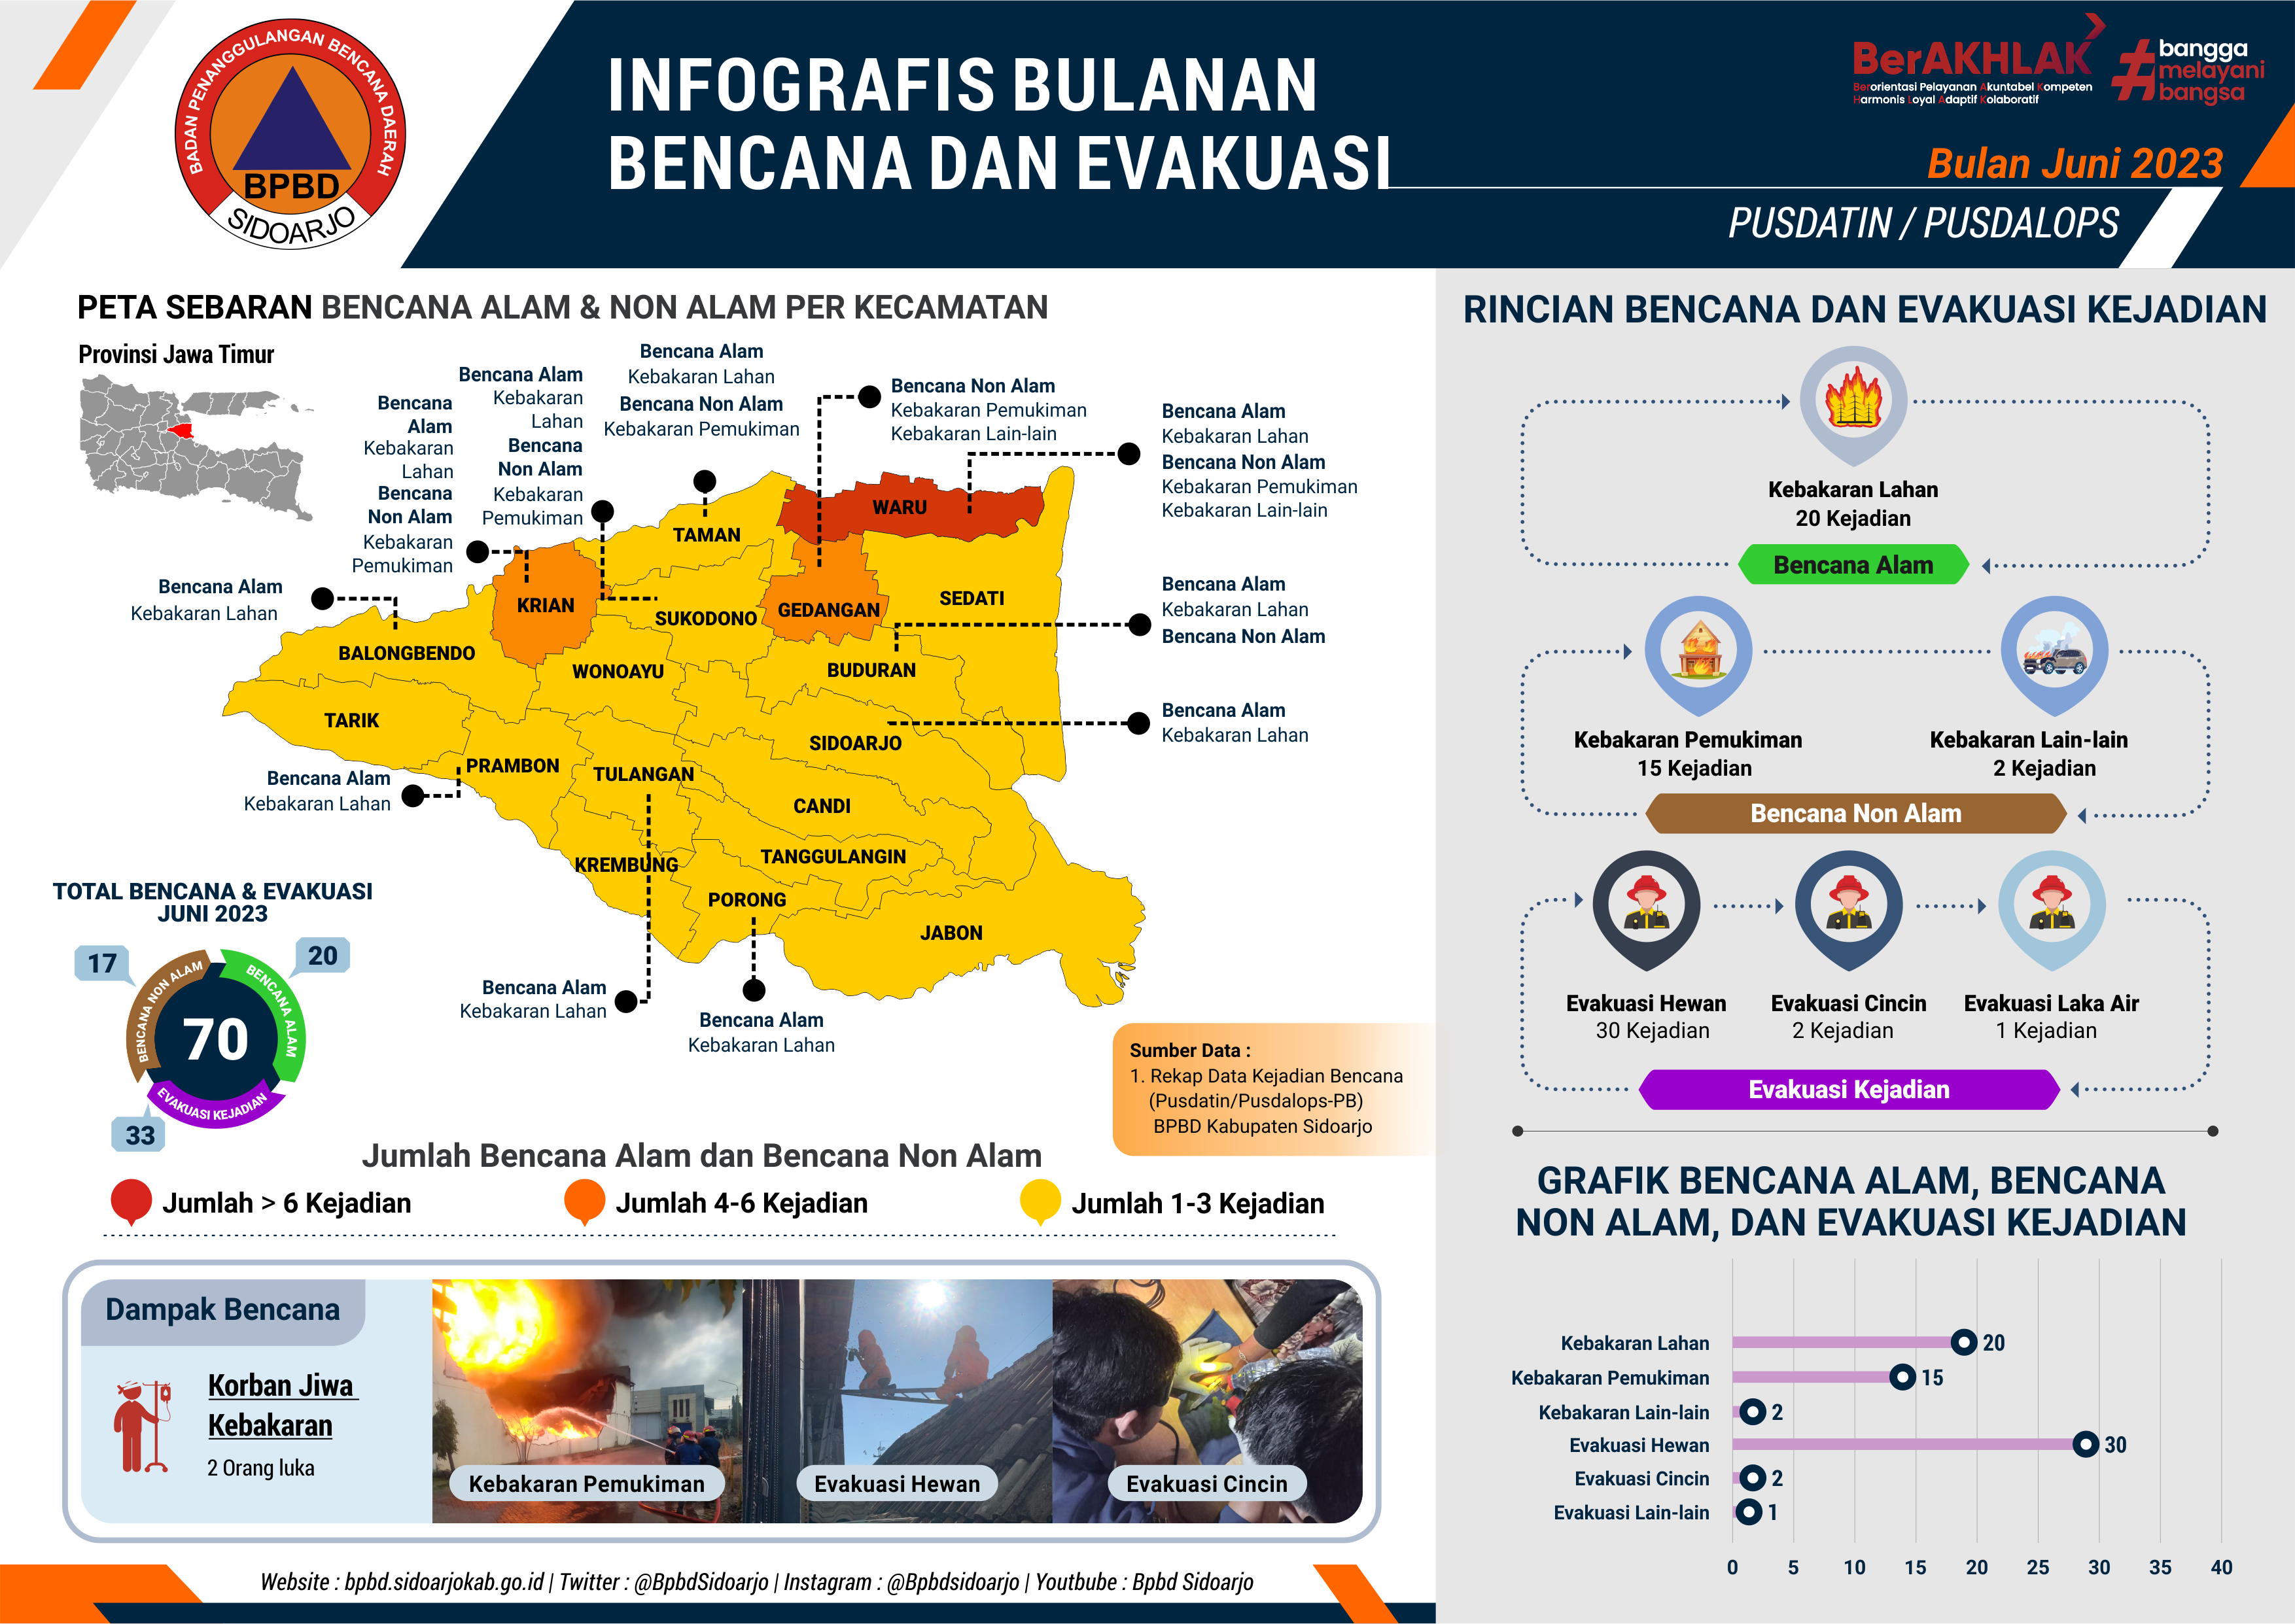 Infografis Bencana dan Evakuasi Bulan Juni 2023